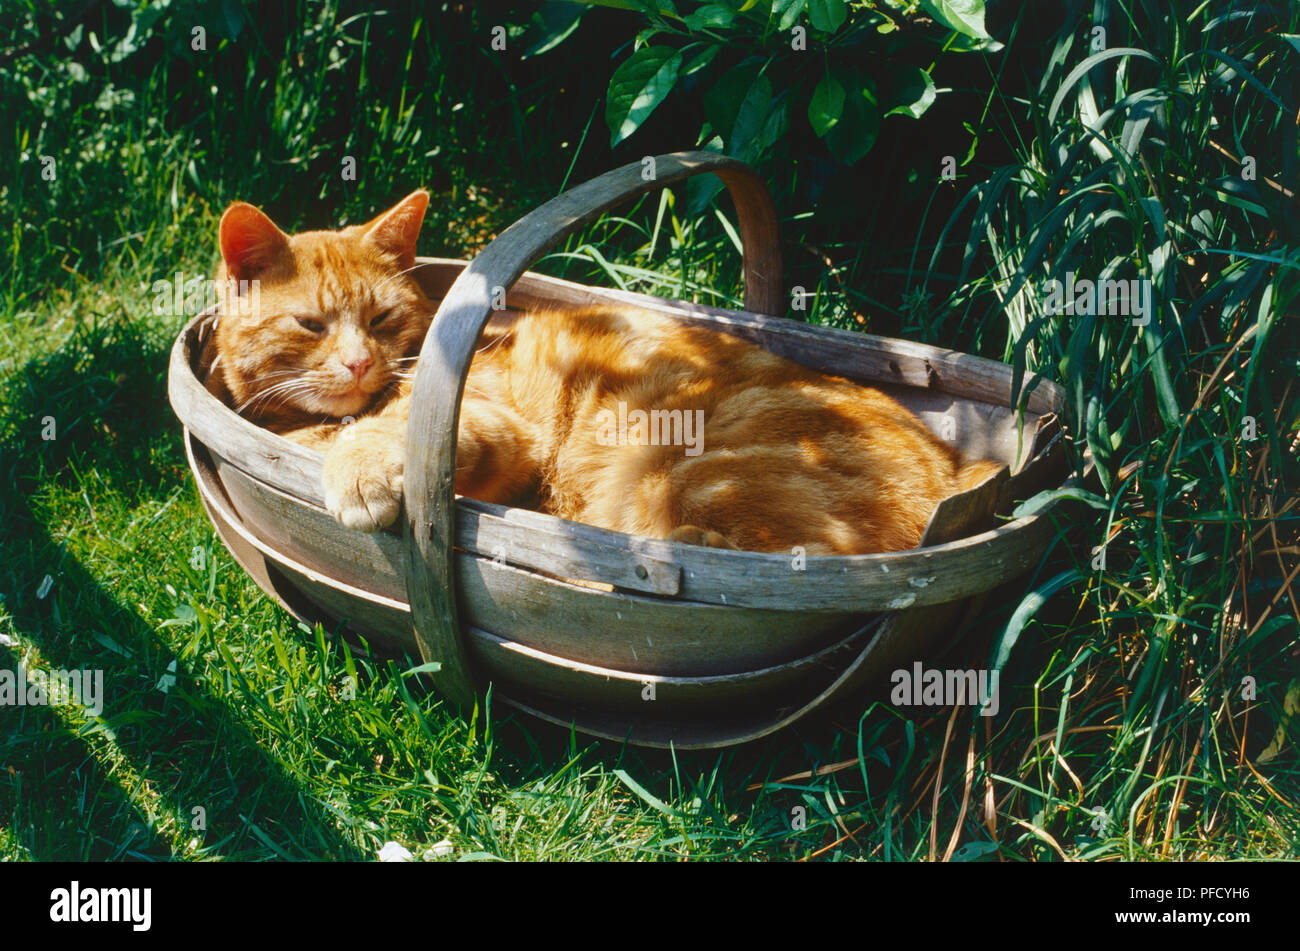 Le gingembre cat allongé sur le dos au panier en bois dans jardin, pattes avant le repos sur le côté du panier, l'herbe et de feuillage entourant, cat à très détendu en soleil. Banque D'Images